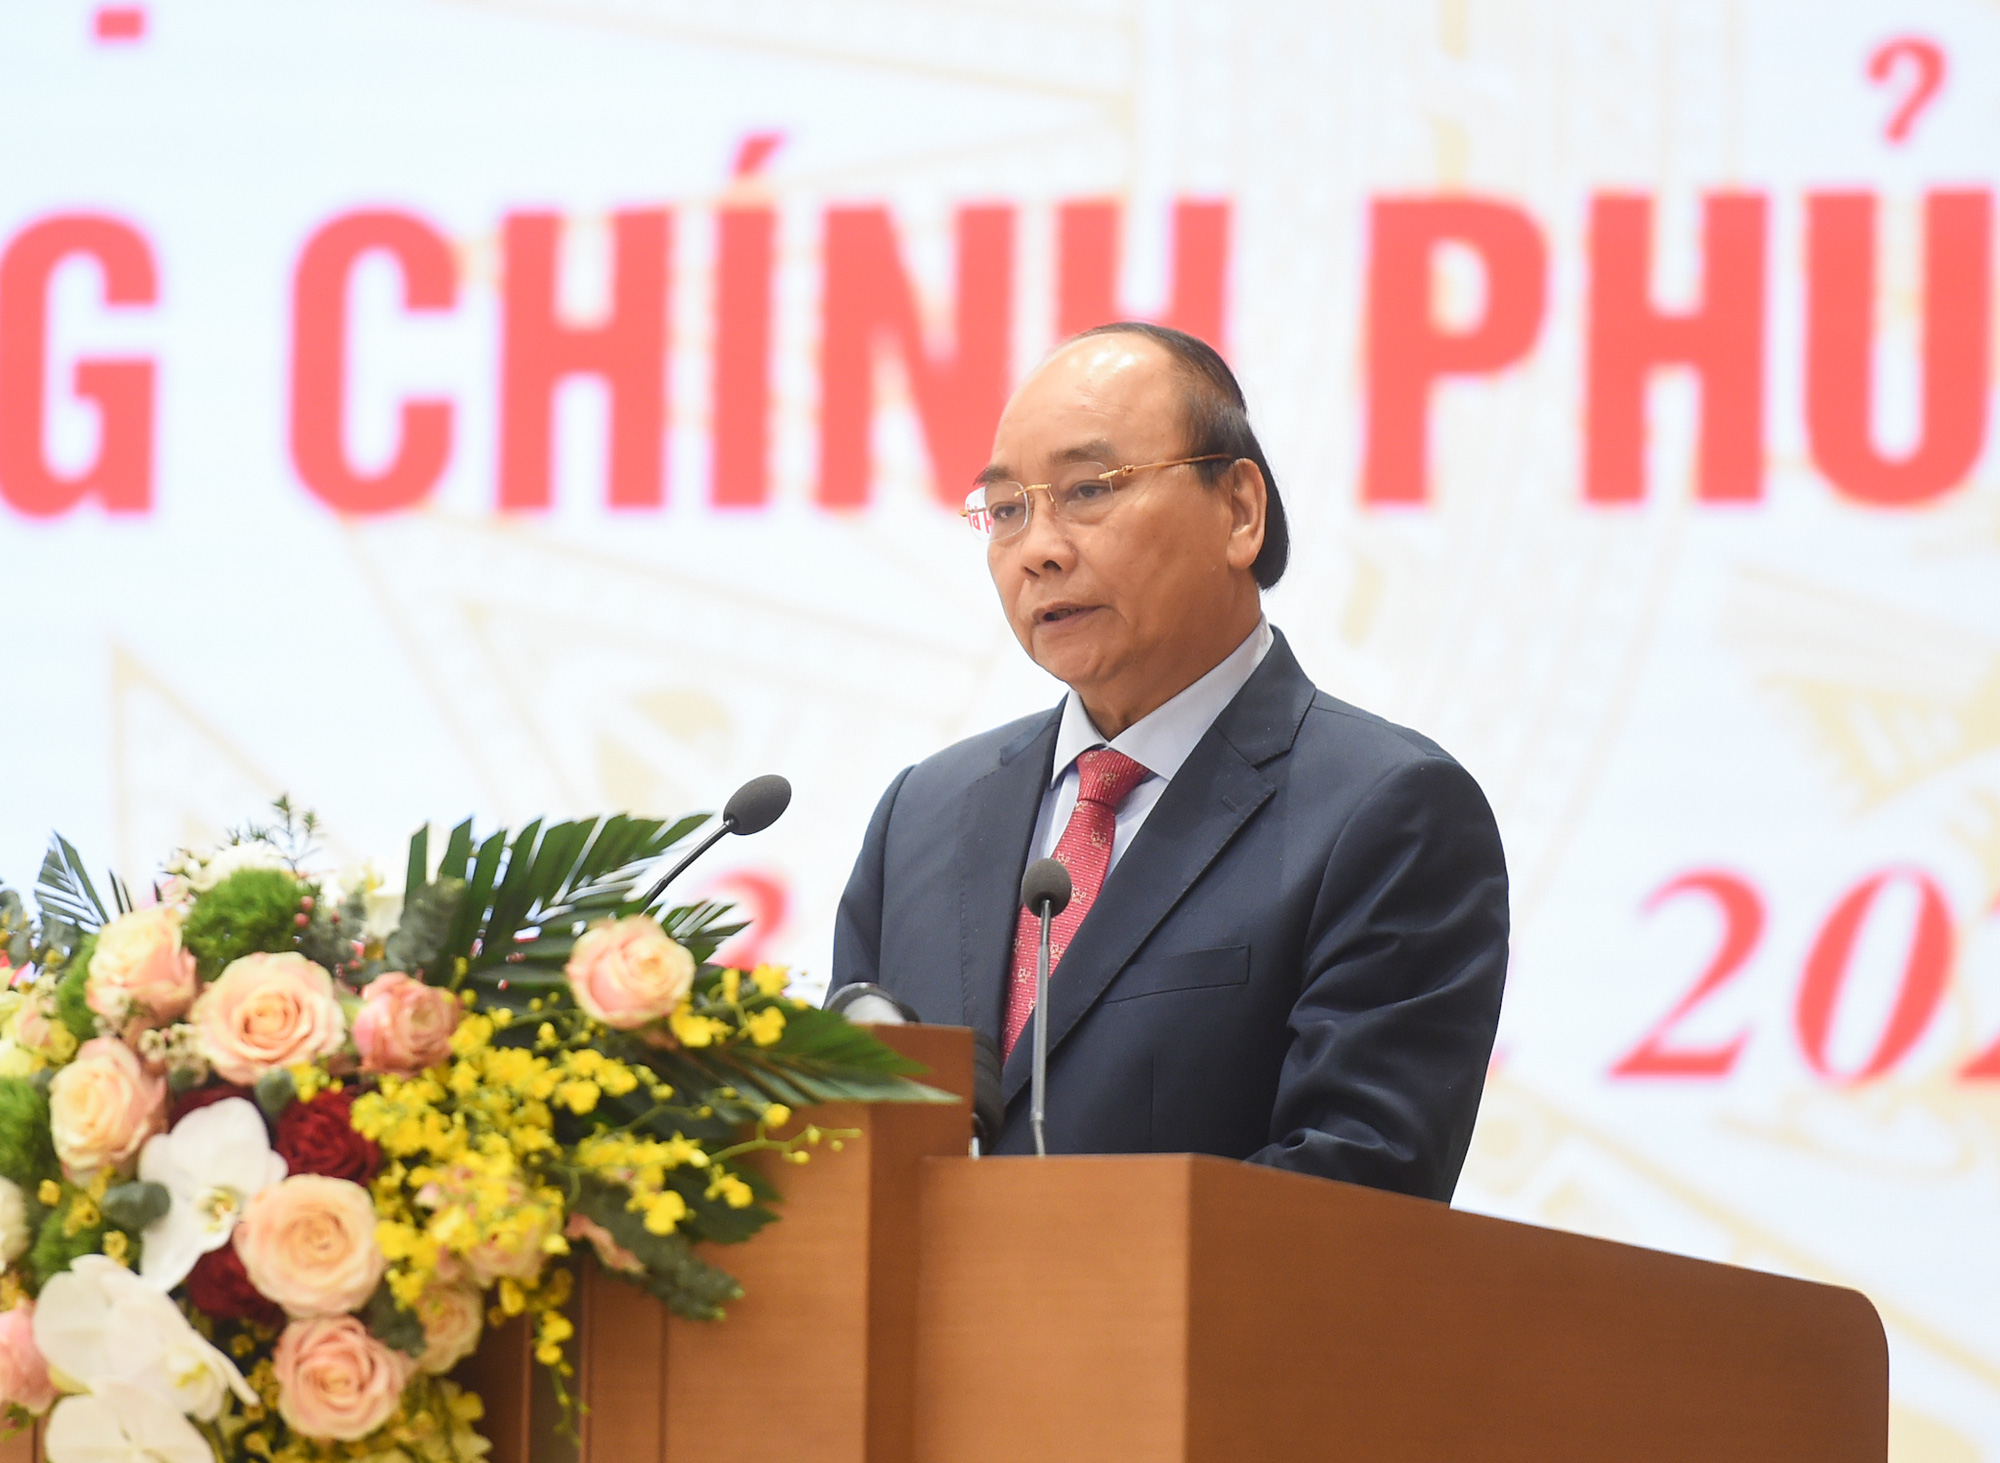 Thủ tướng Nguyễn Xuân Phúc: Chúng ta bàn giao những gì tốt đẹp nhất cho những đồng chí nhận nhiệm vụ mới - Ảnh 1.